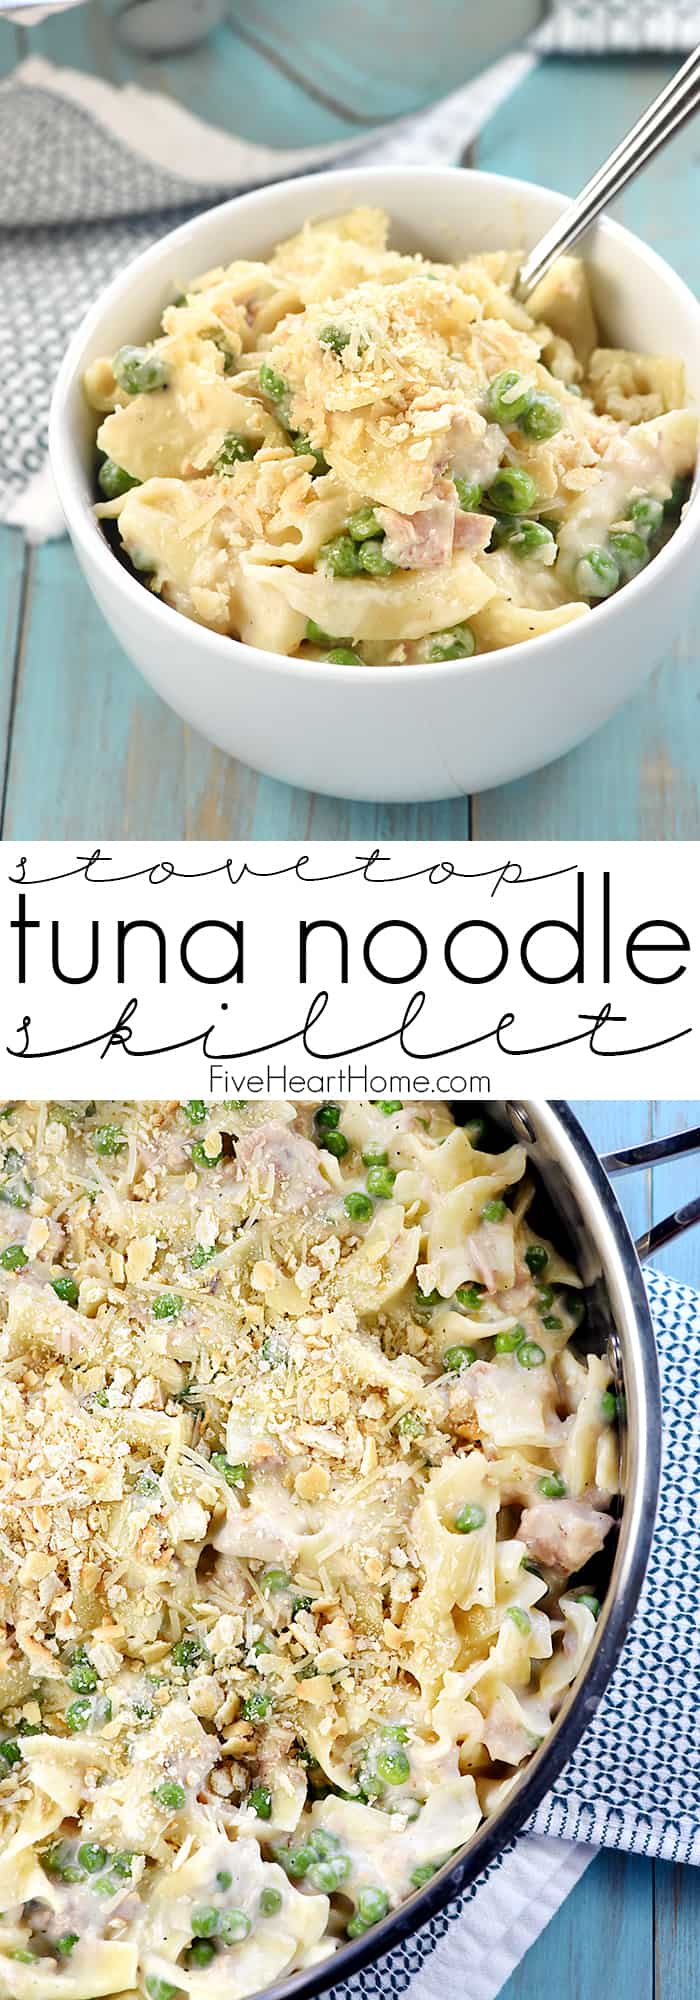 Easy Tuna Noodle Casserole Casserole é uma receita de jantar rápida, de fogão, de raiz carregada com atum, massa de ovo, ervilhas, e um molho branco caseiro, cremoso e queijoso (sem sopa)! via @fivehearthome